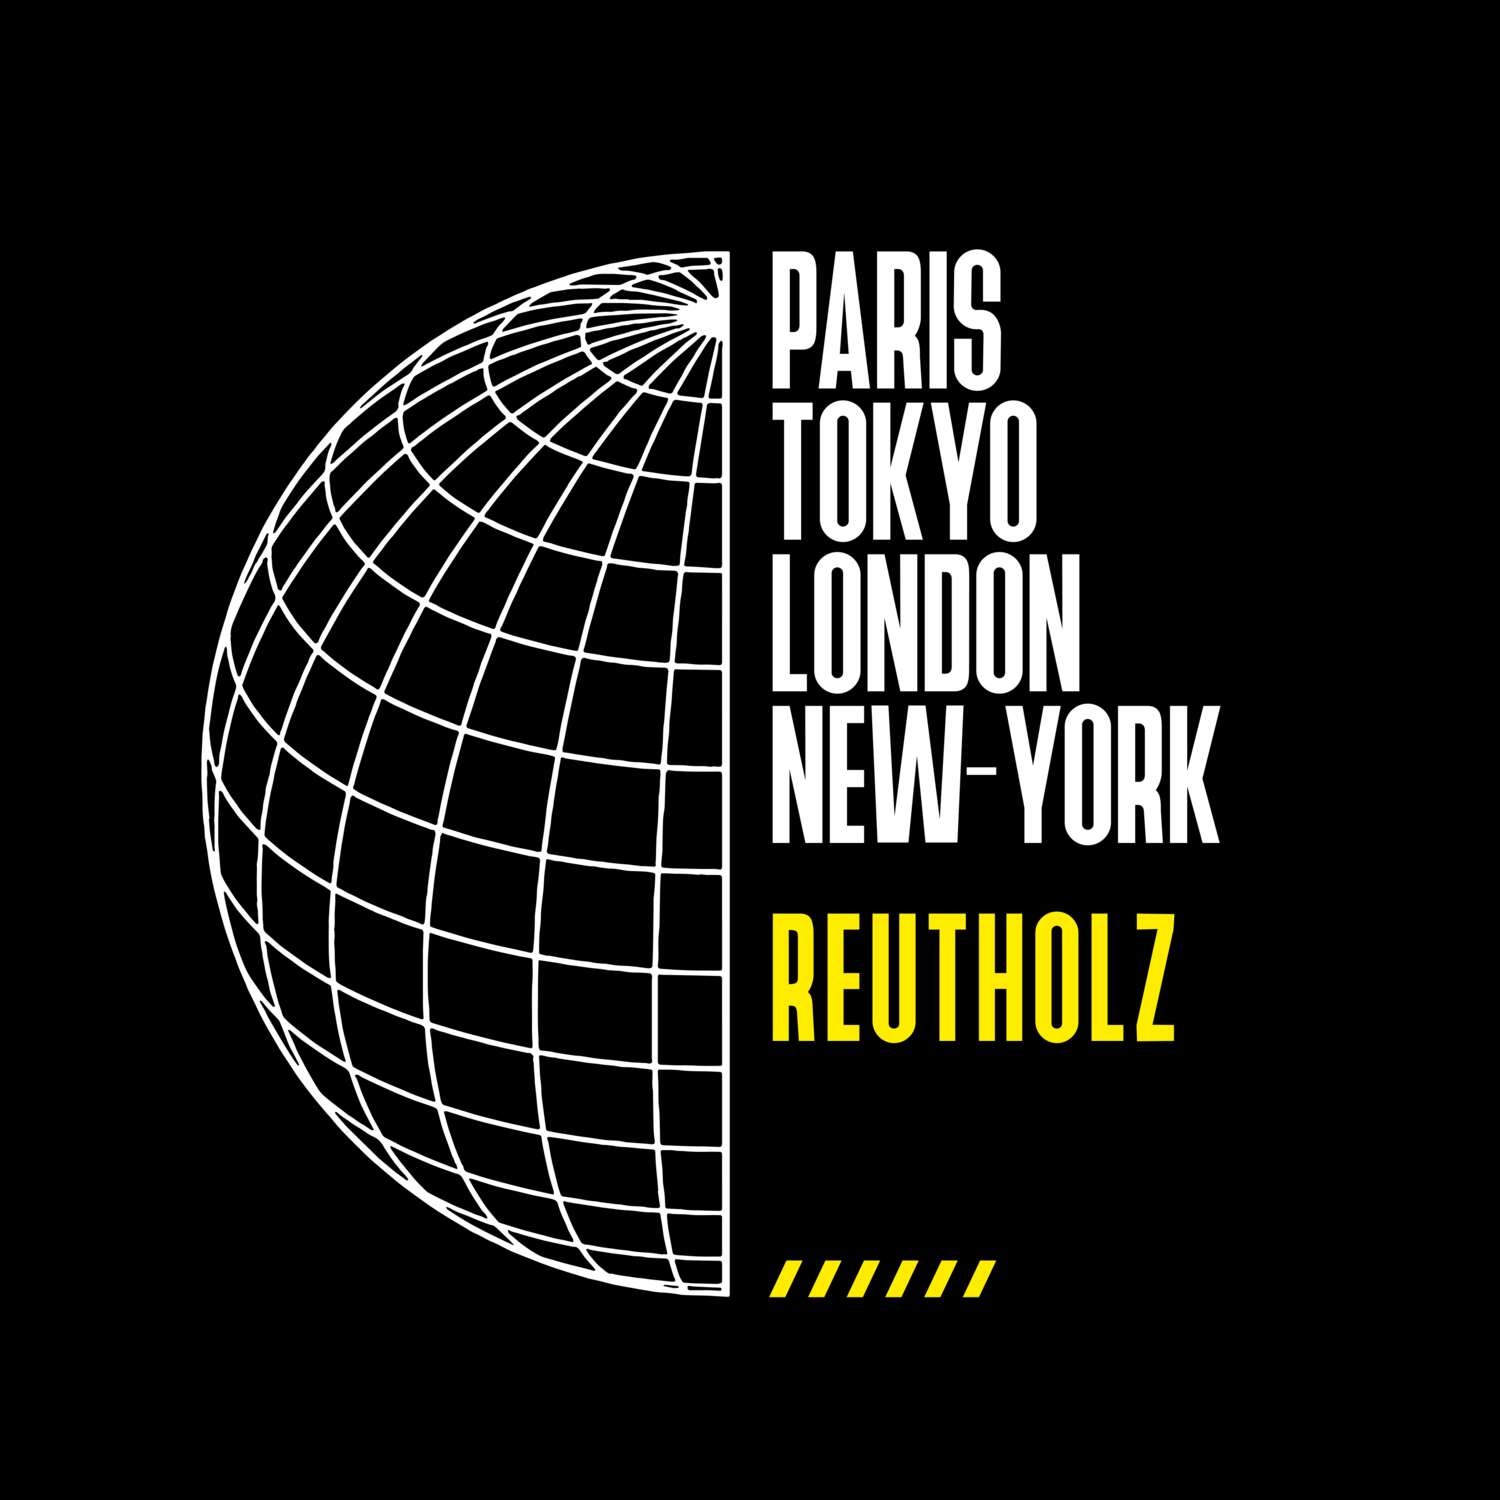 Reutholz T-Shirt »Paris Tokyo London«